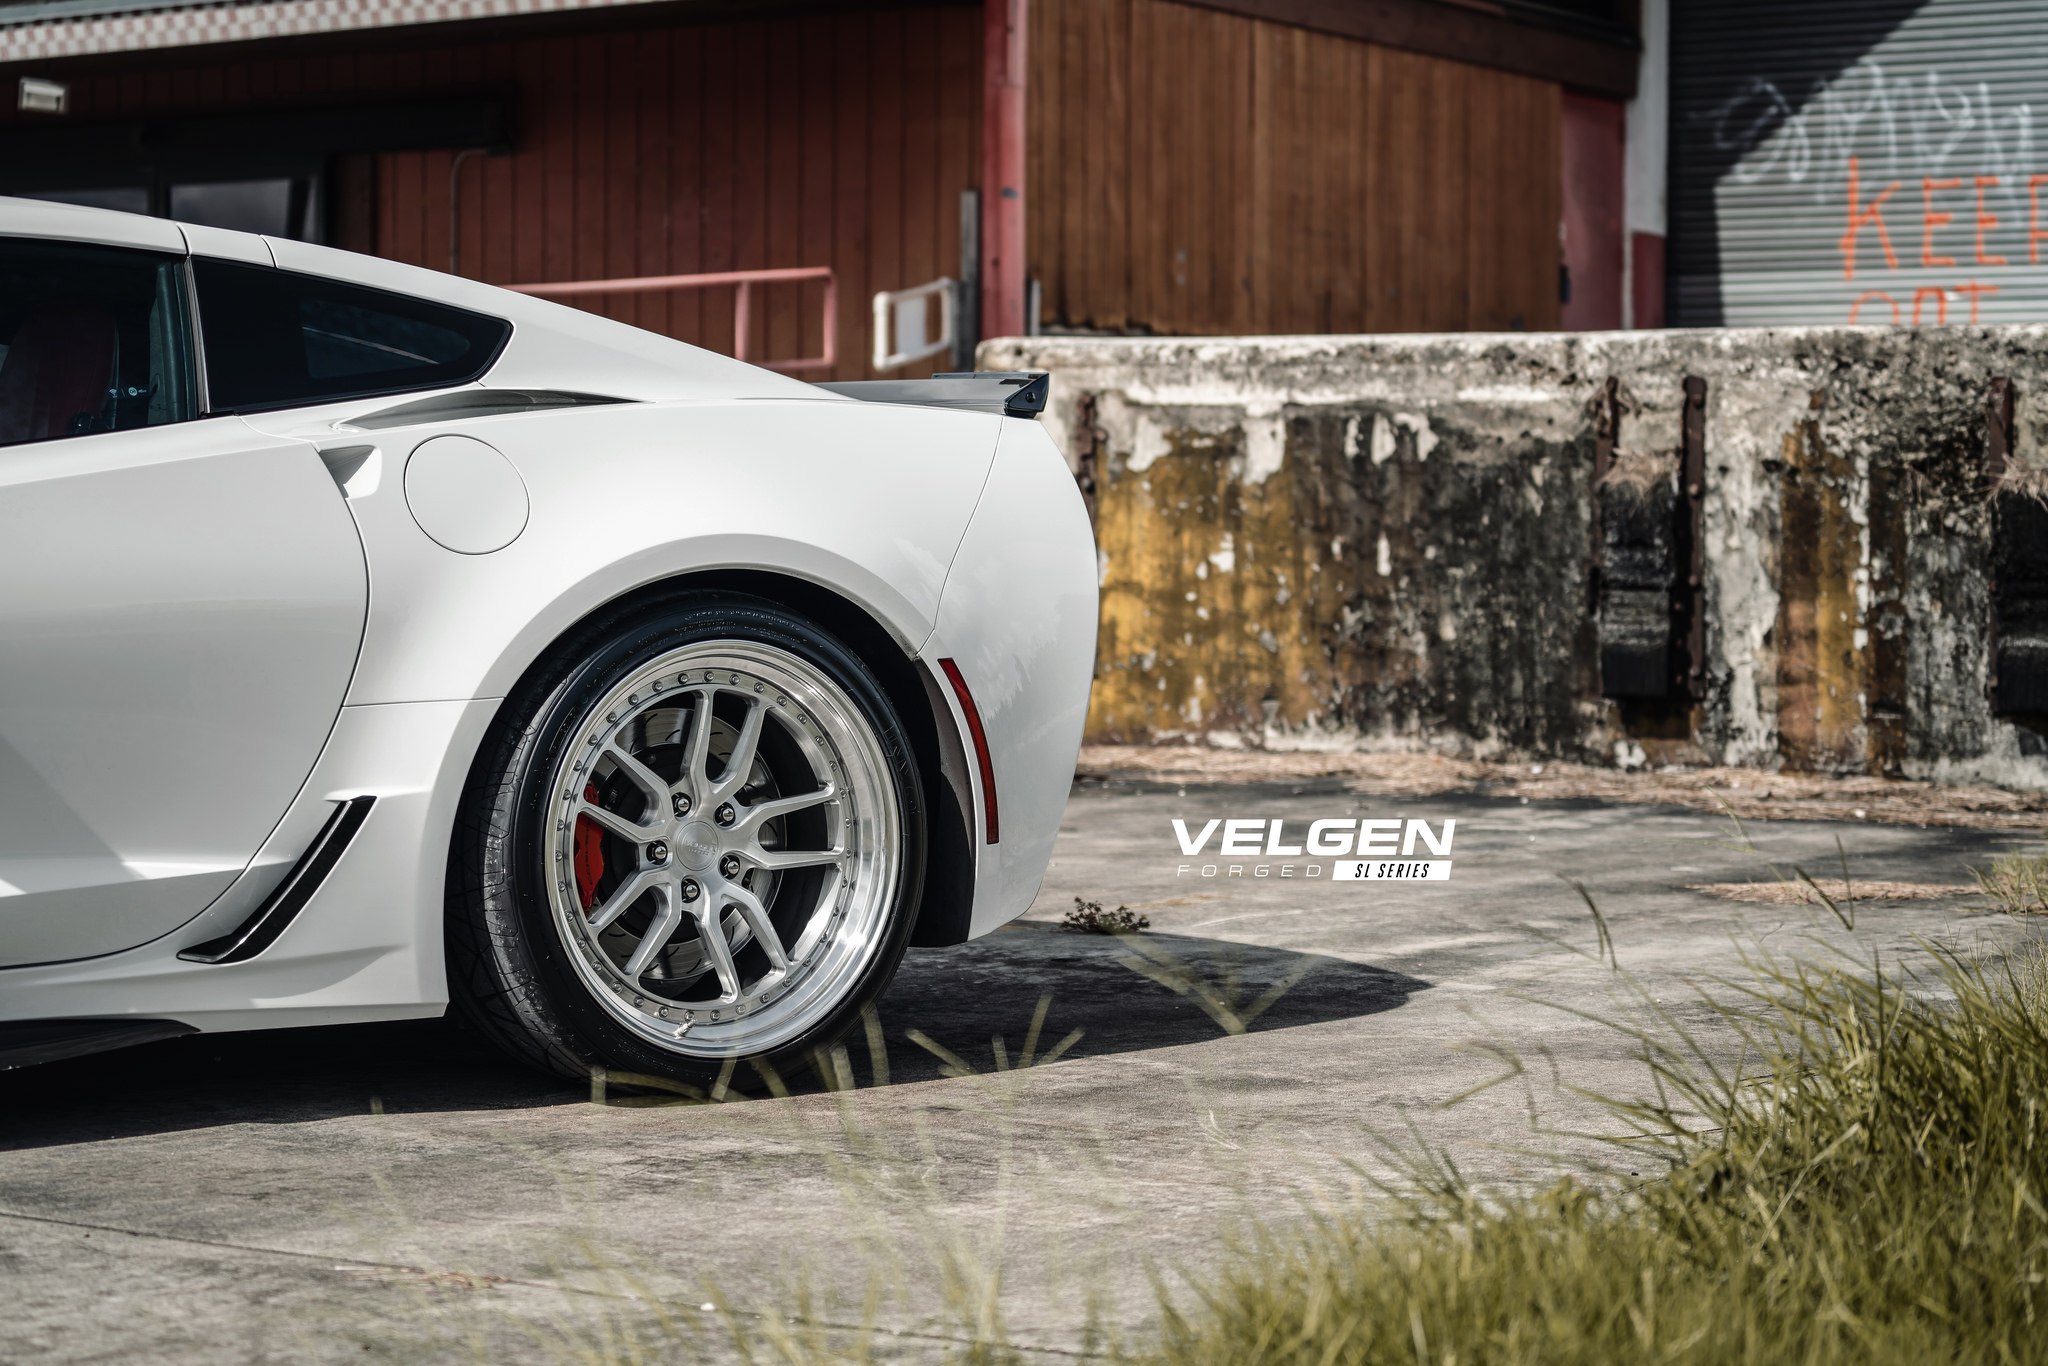 Chrome Forged Velgen Rims on White Chevy Corvette - Photo by Velgen Wheels